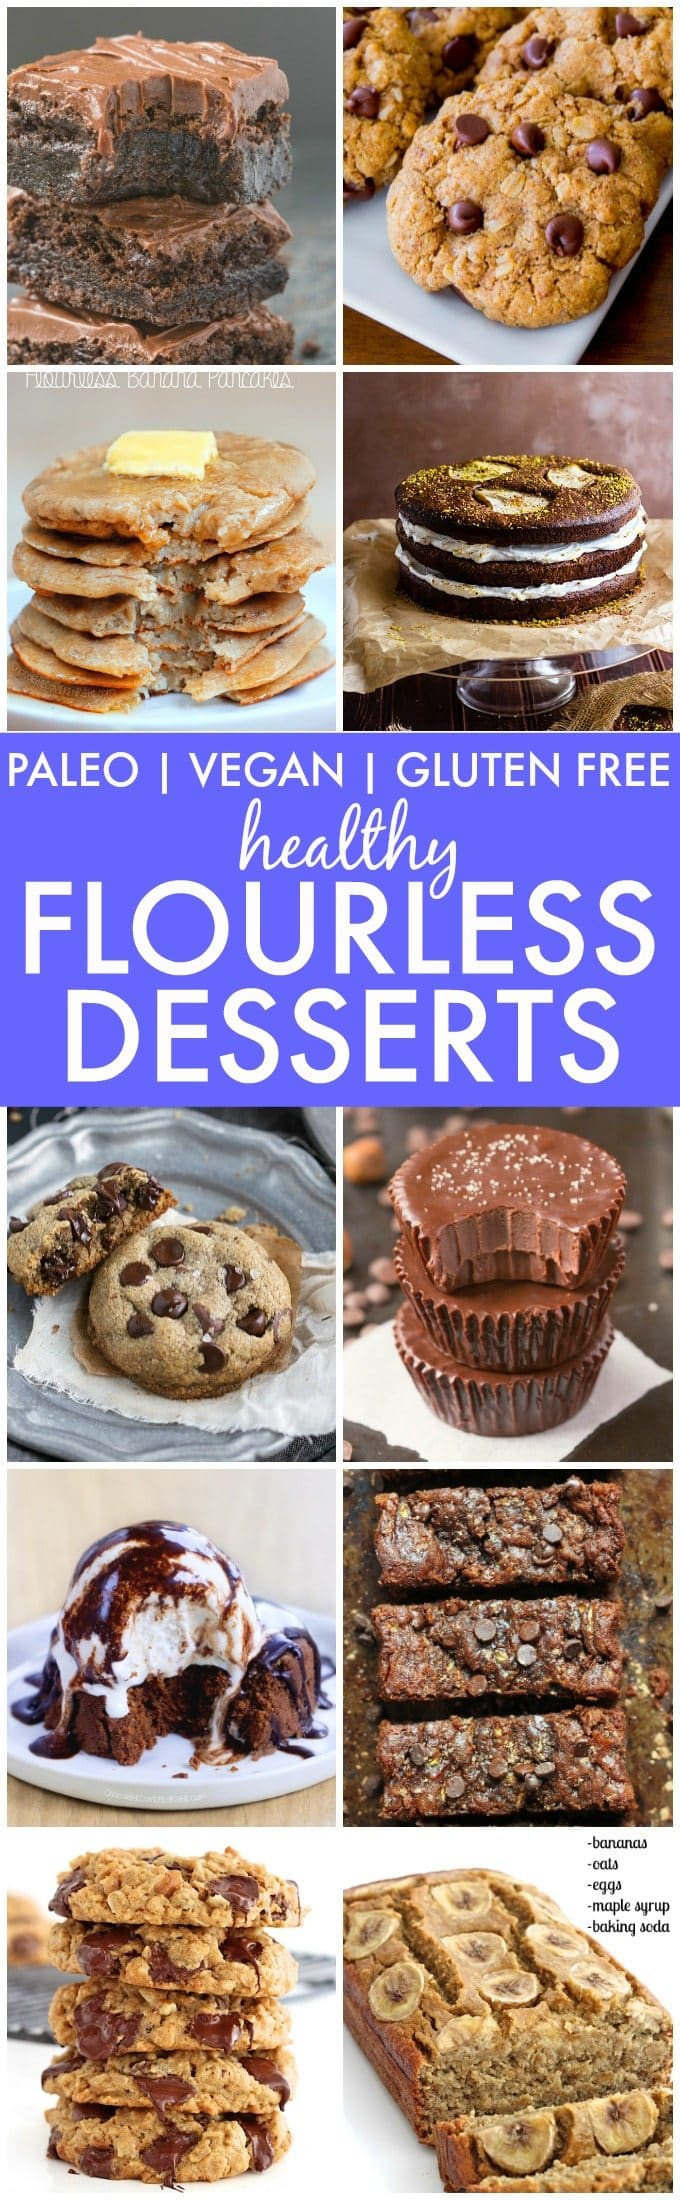 Healthy Paleo Desserts
 The Best Healthy Flourless Desserts Paleo Vegan Gluten